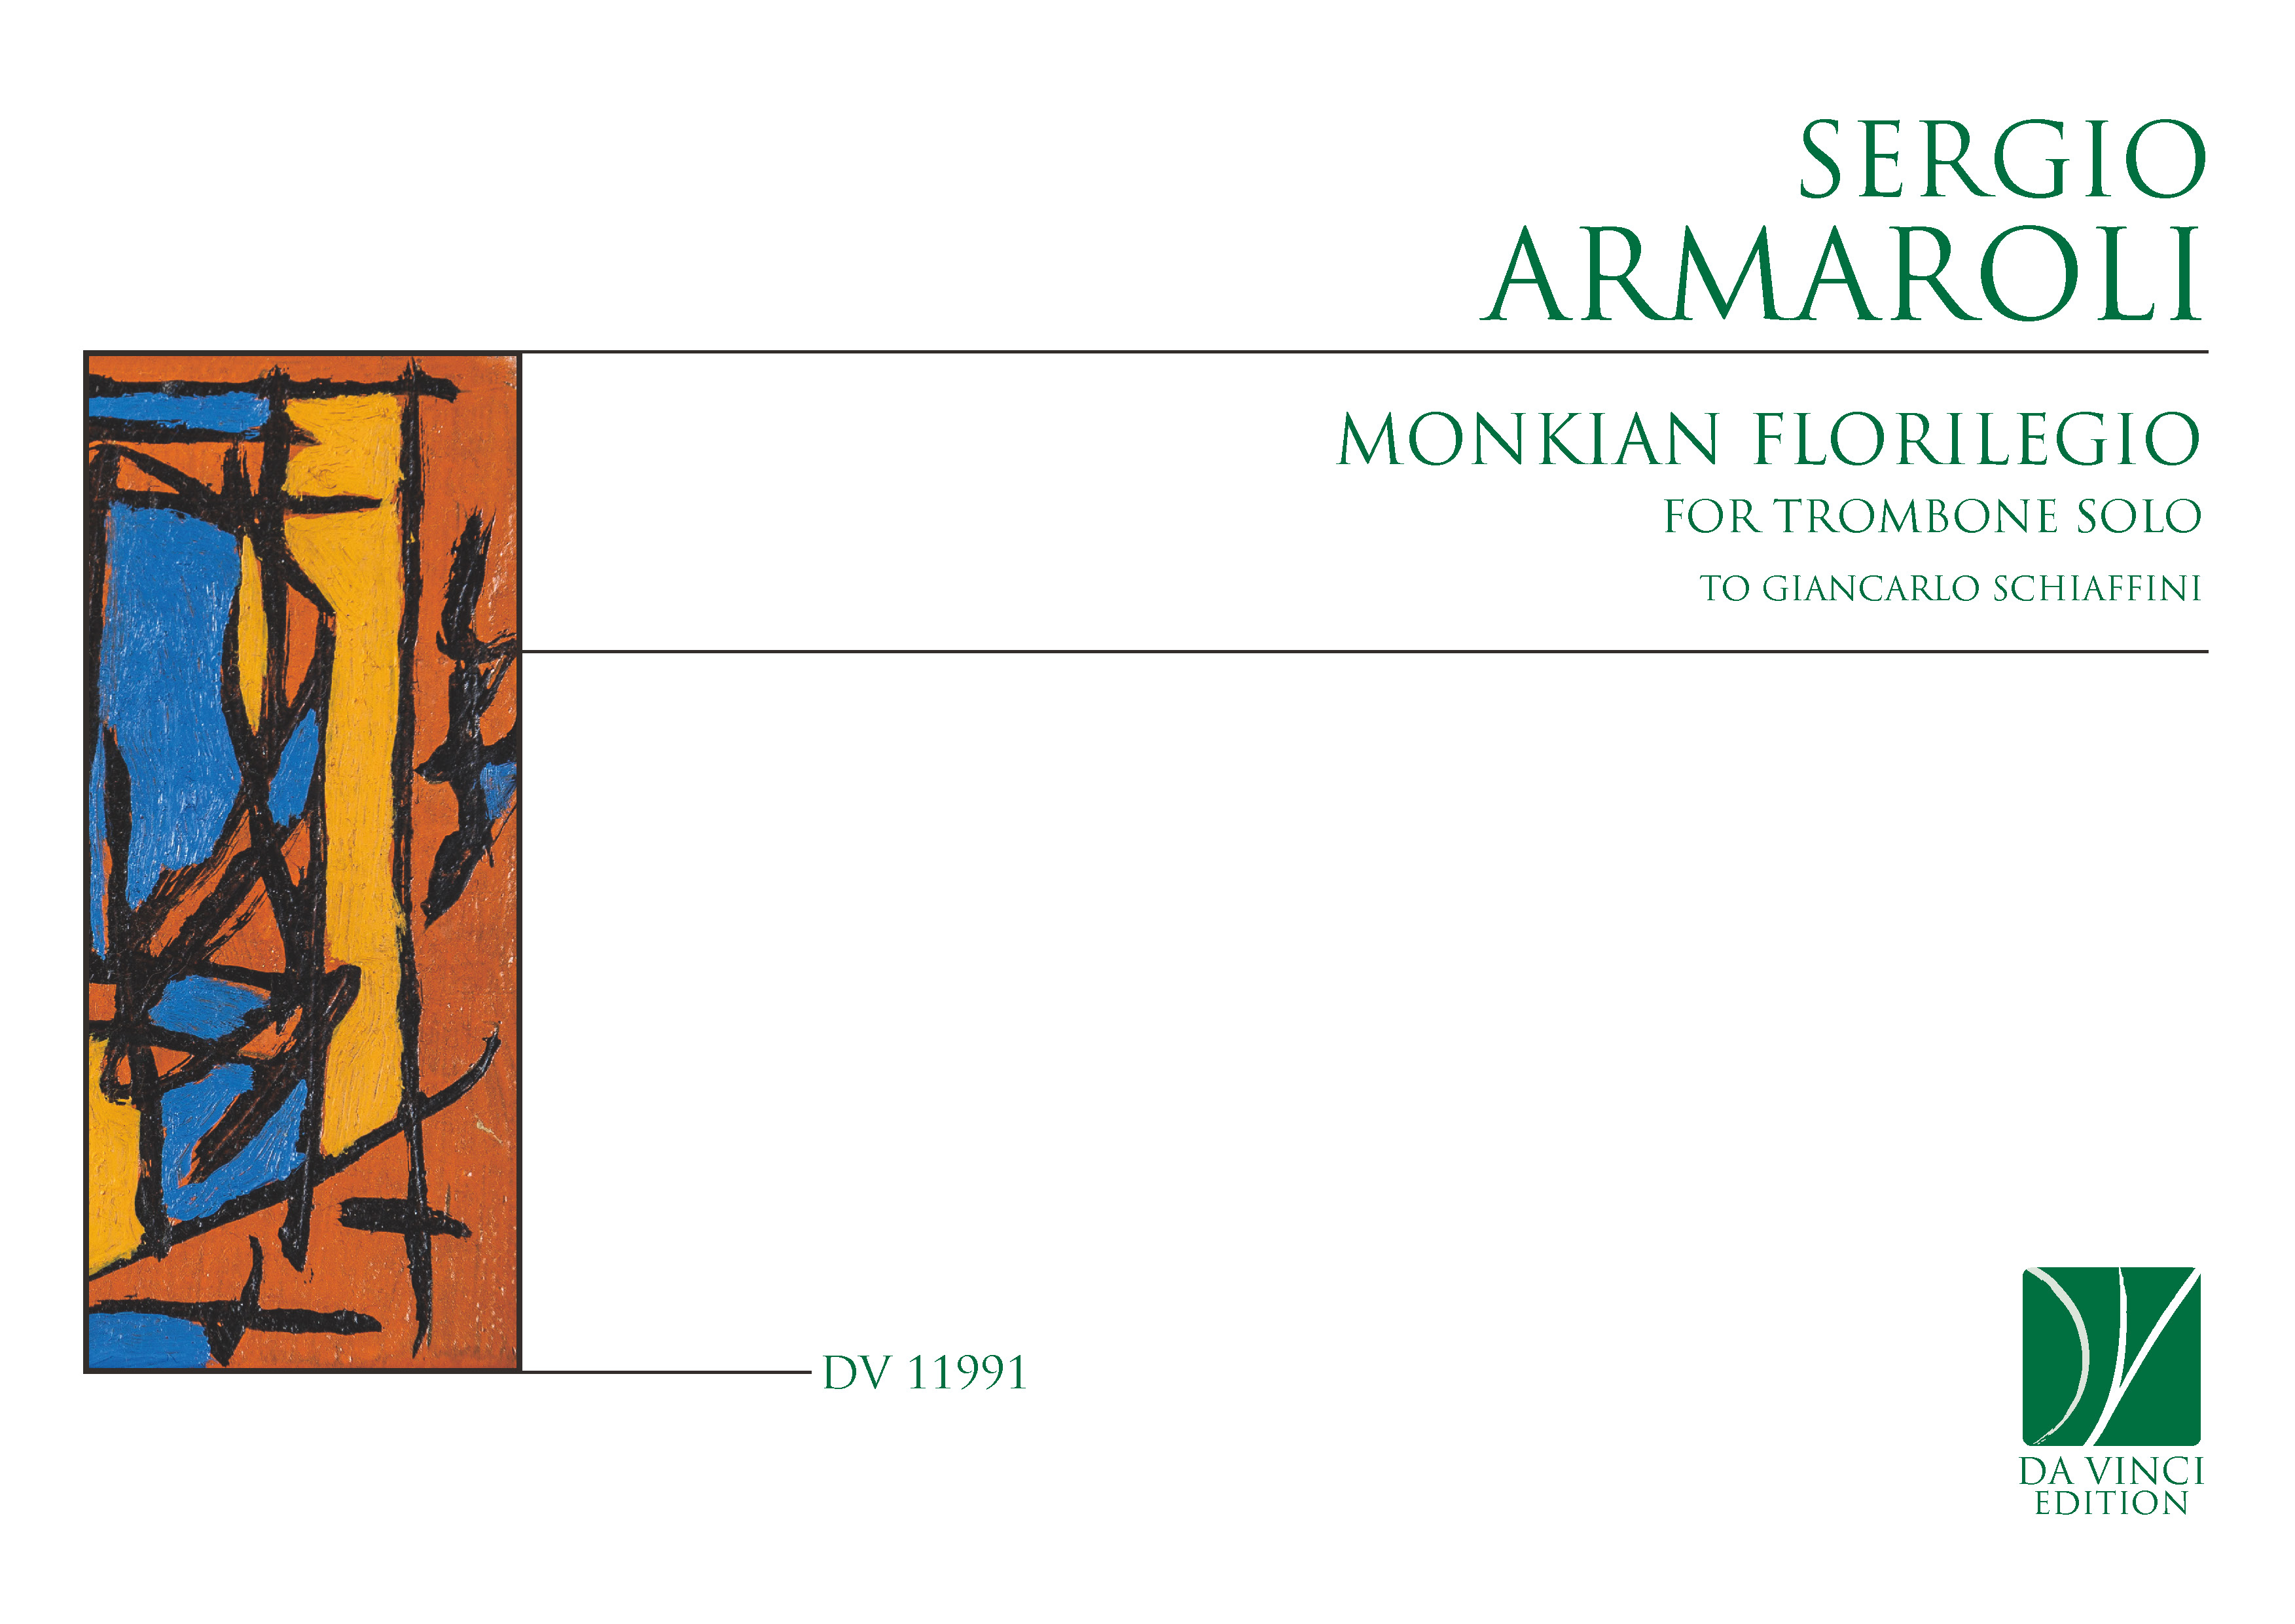 DV 11991 - Cover (Armaroli - Monkian)